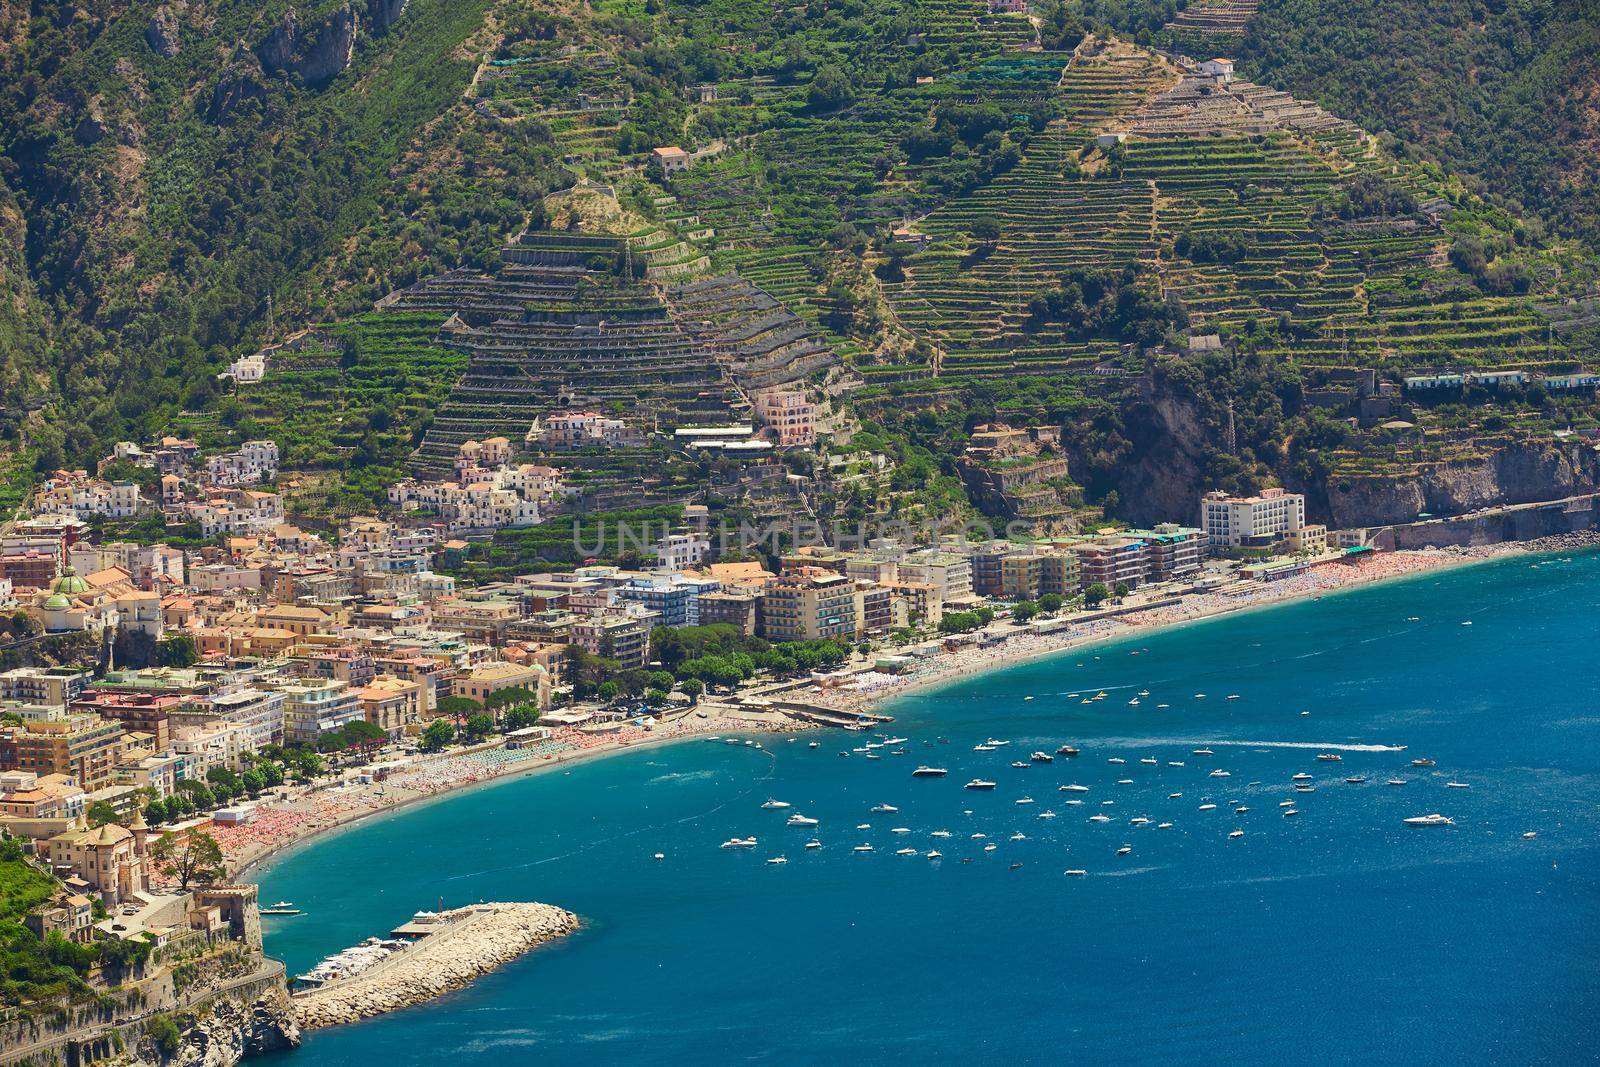 High angle view of Minori and Maiori, Amalfi coast, Italy by sarymsakov